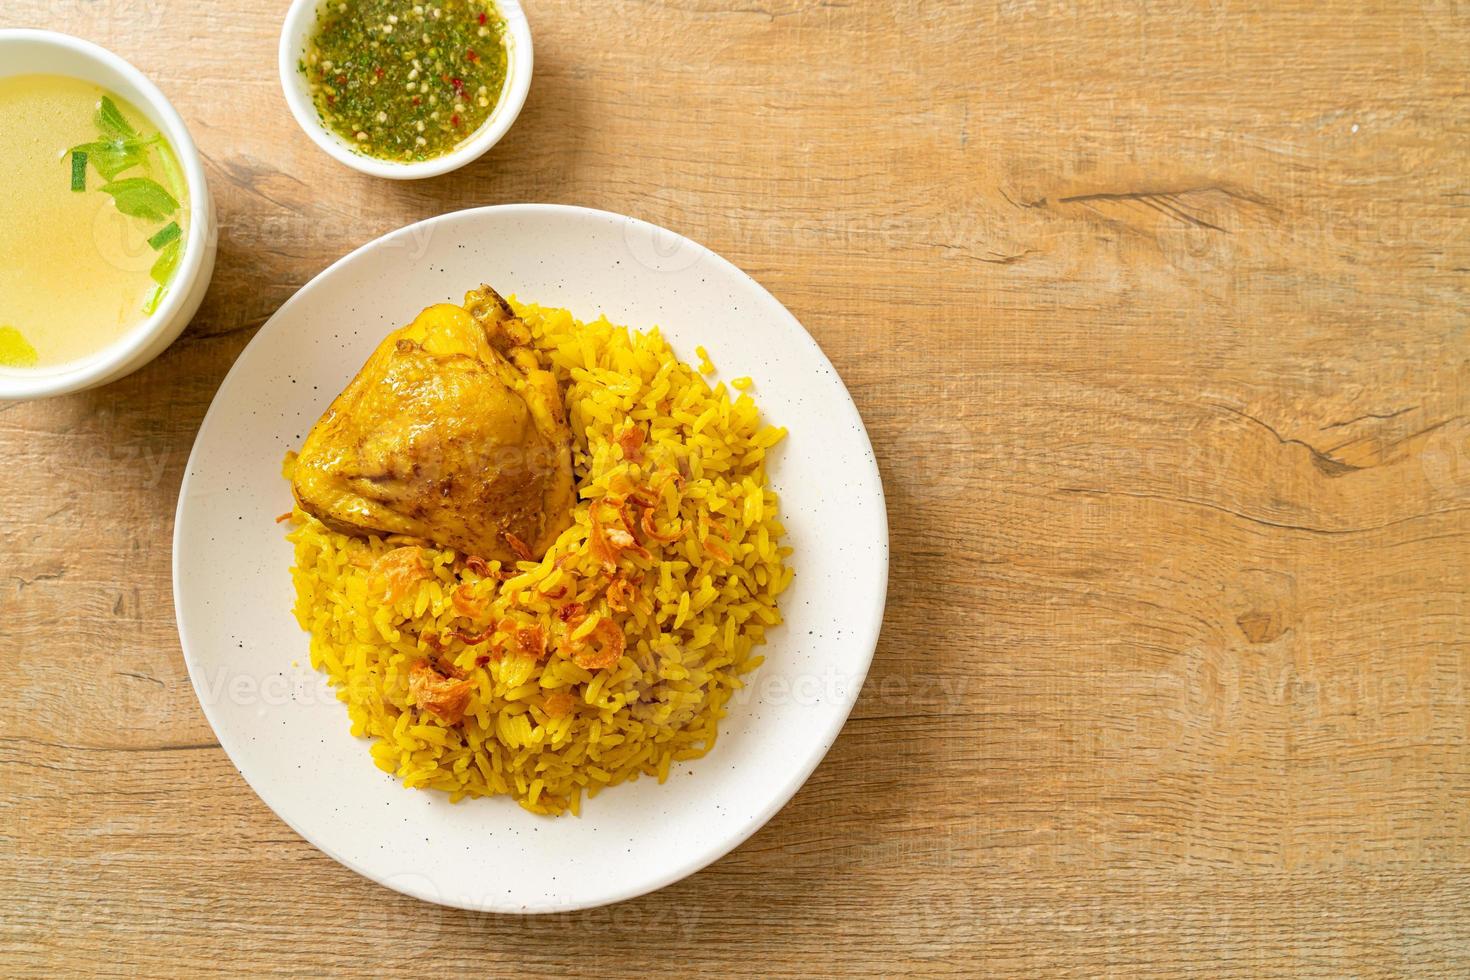 kyckling biryani eller curried ris och kyckling - thailändsk-muslimsk version av indisk biryani, med doftande gult ris och kyckling foto